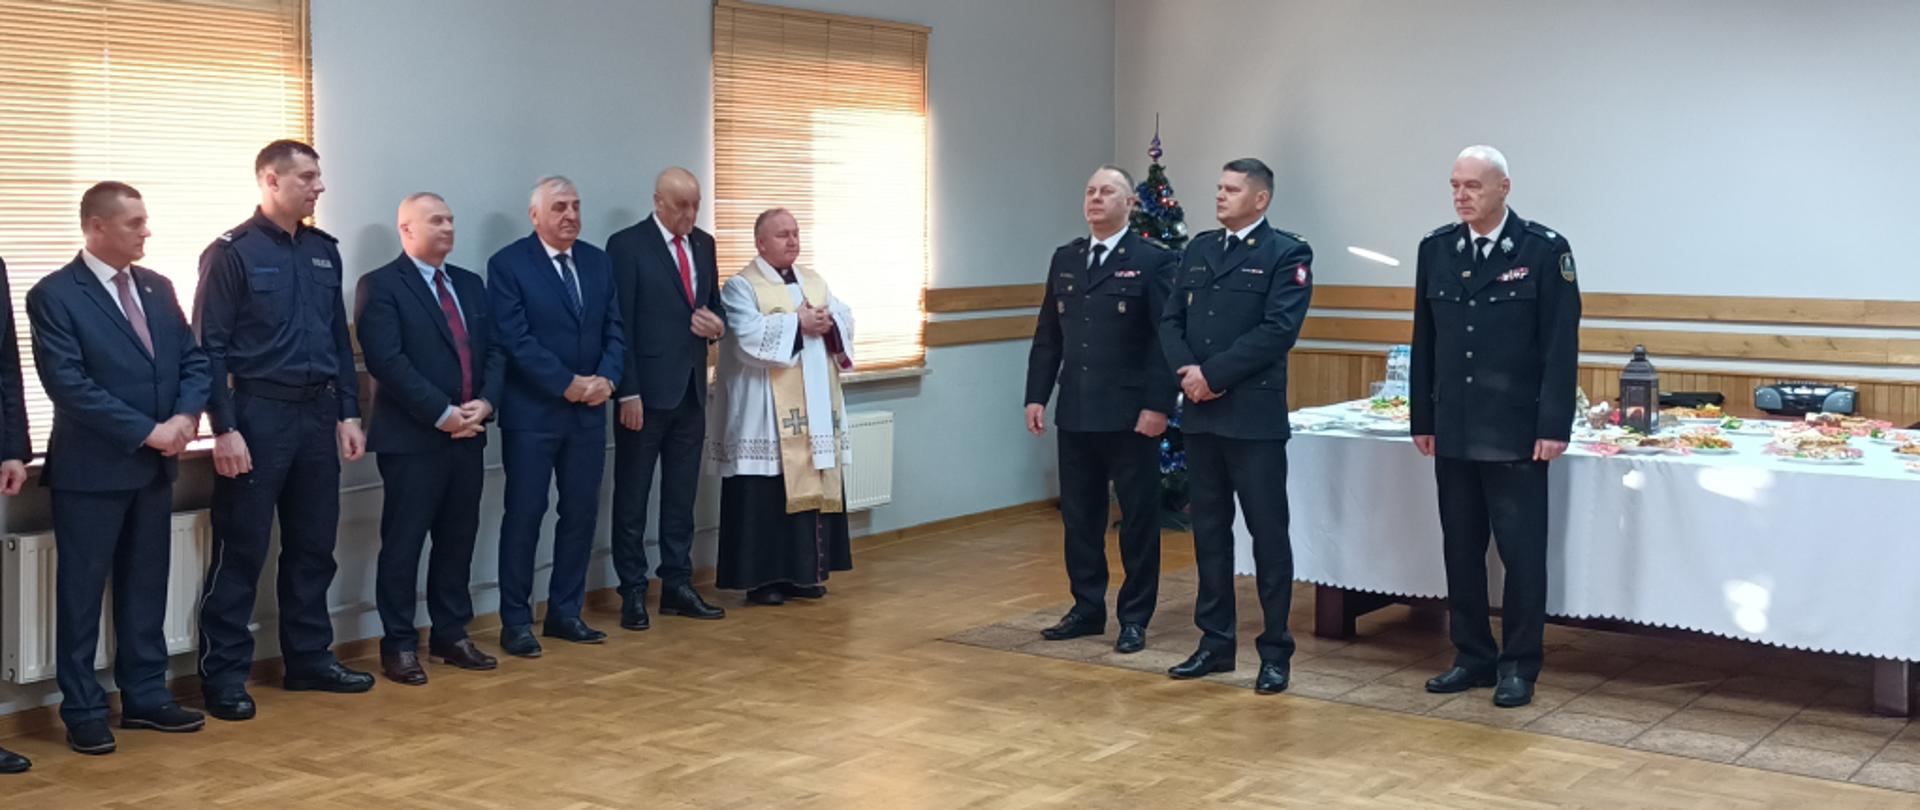 Spotkanie opłatkowe w Komendzie Powiatowej Państwowej Straży Pożarnej w Zambrowie